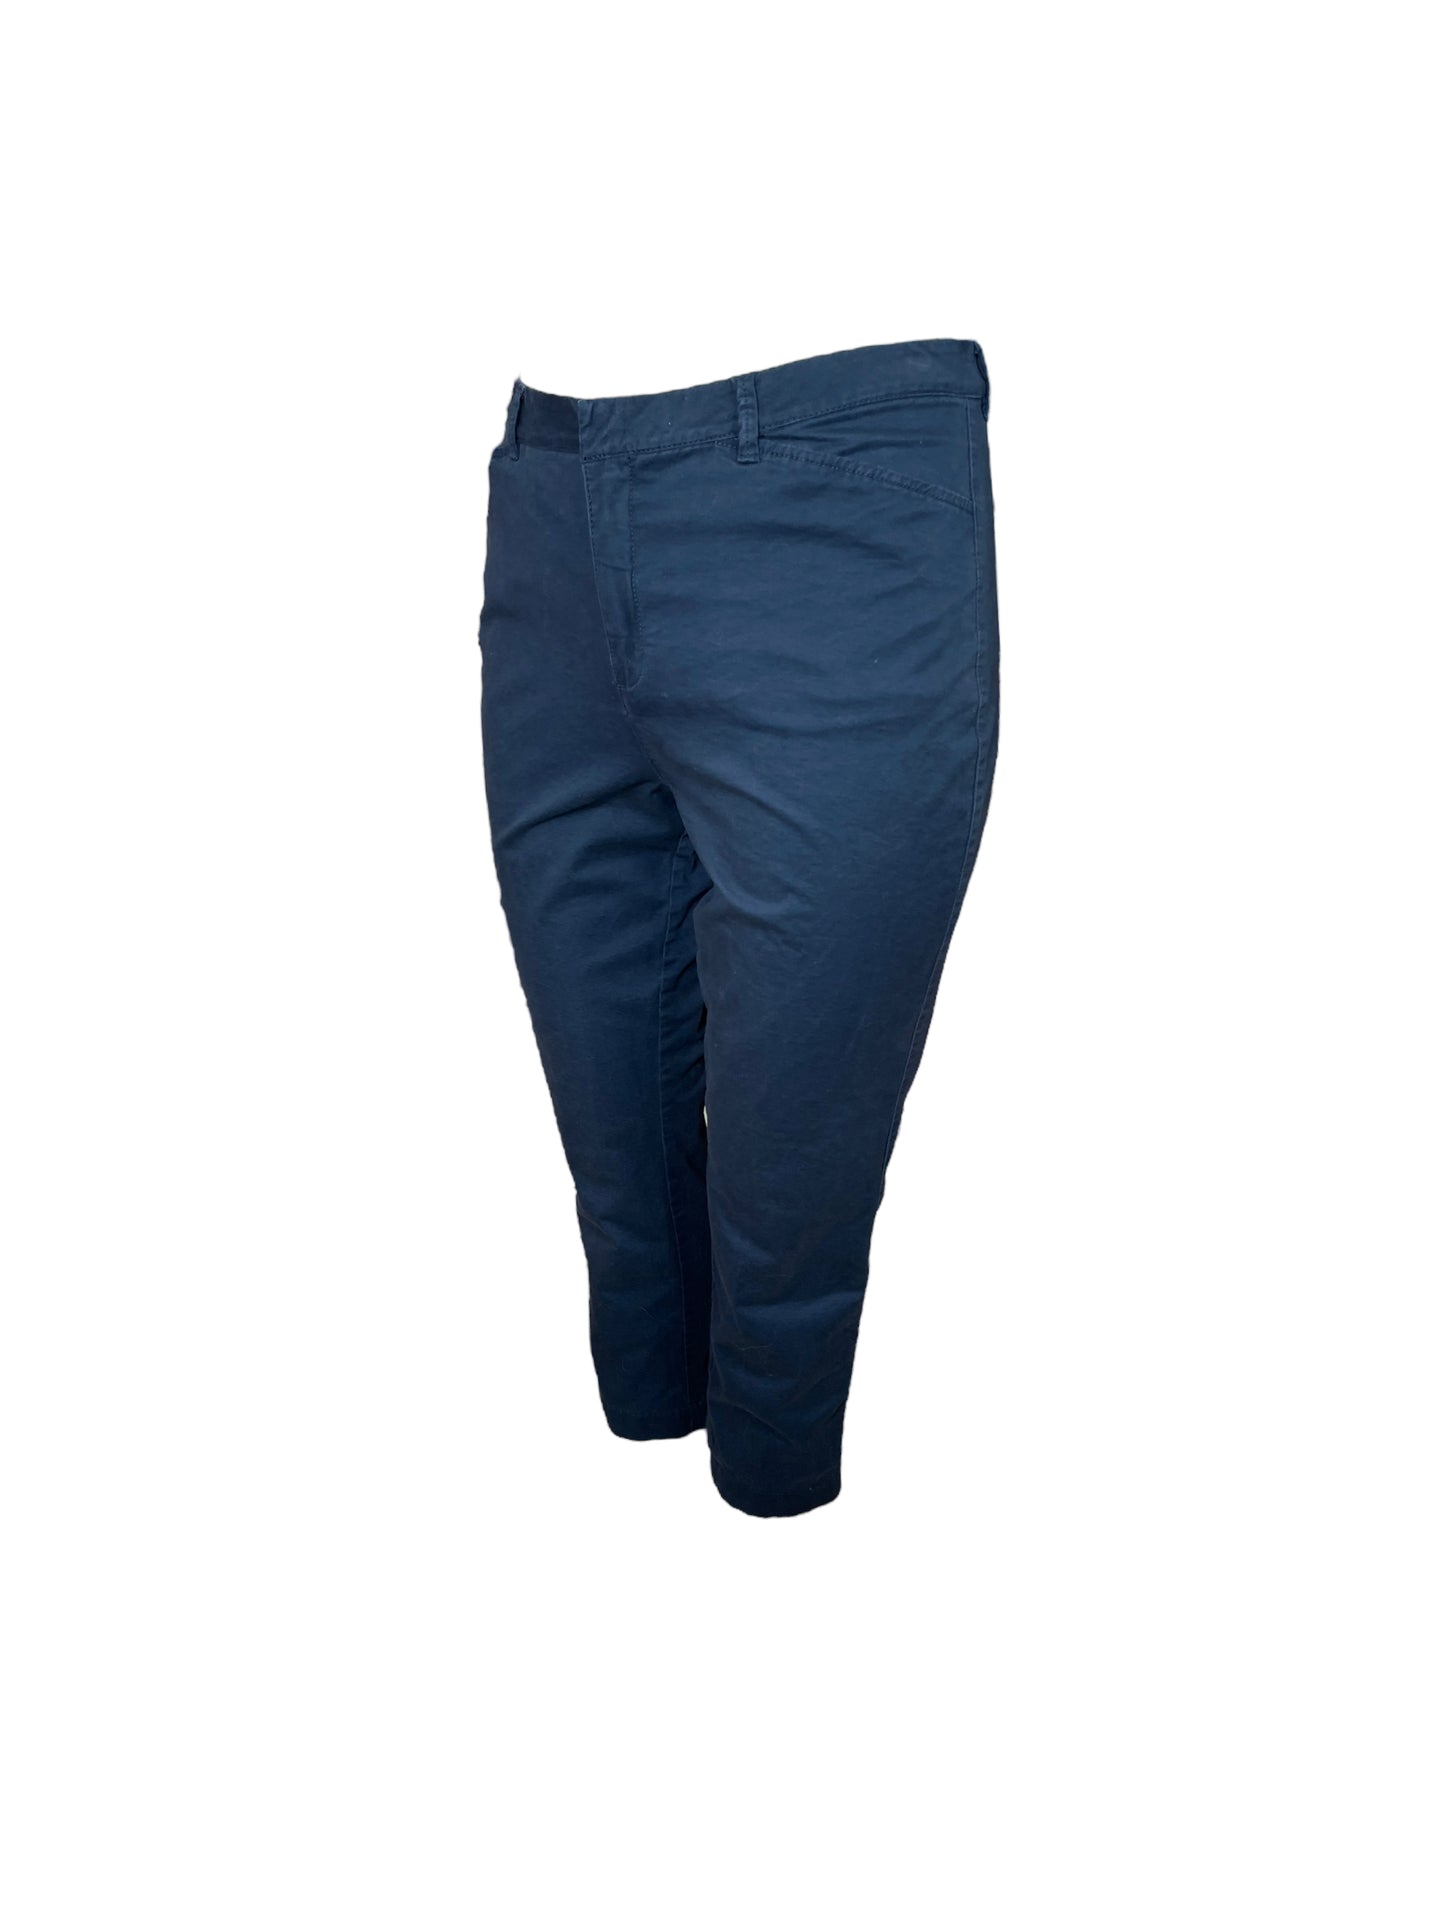 “George” Navy Blue Pants (16)